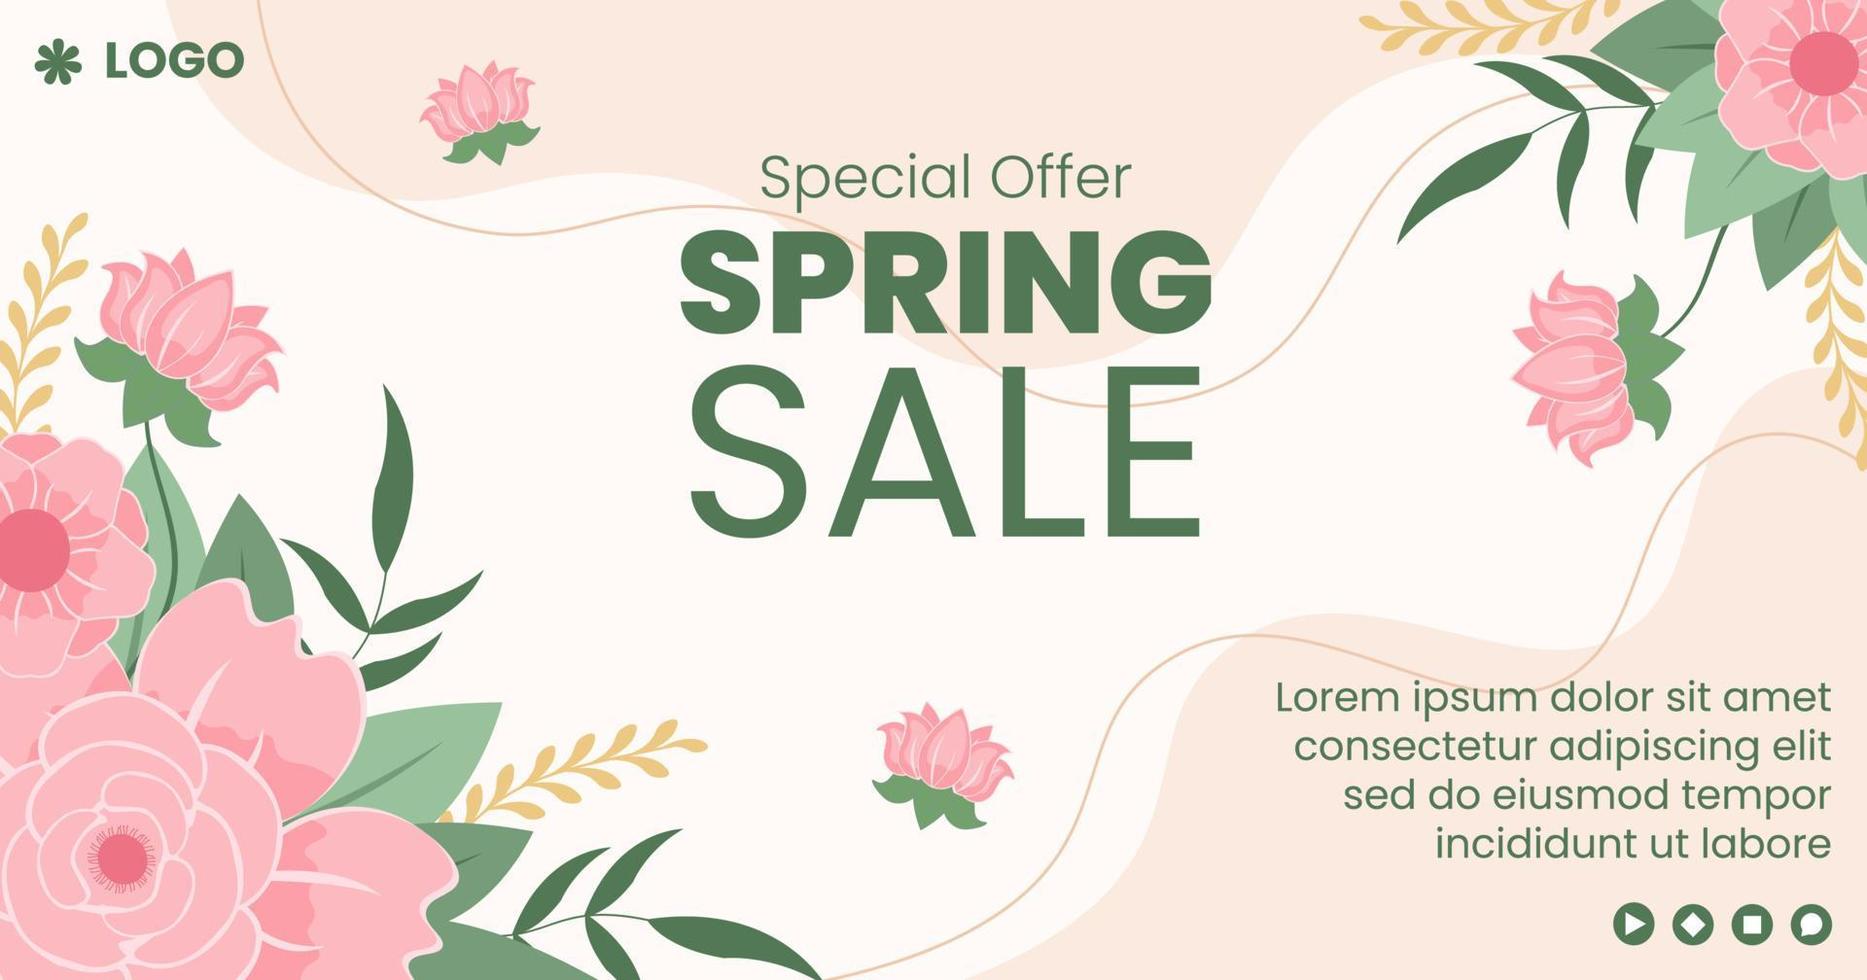 venda de primavera com flores em flor post modelo ilustração plana editável de fundo quadrado adequado para mídias sociais ou cartão de felicitações vetor